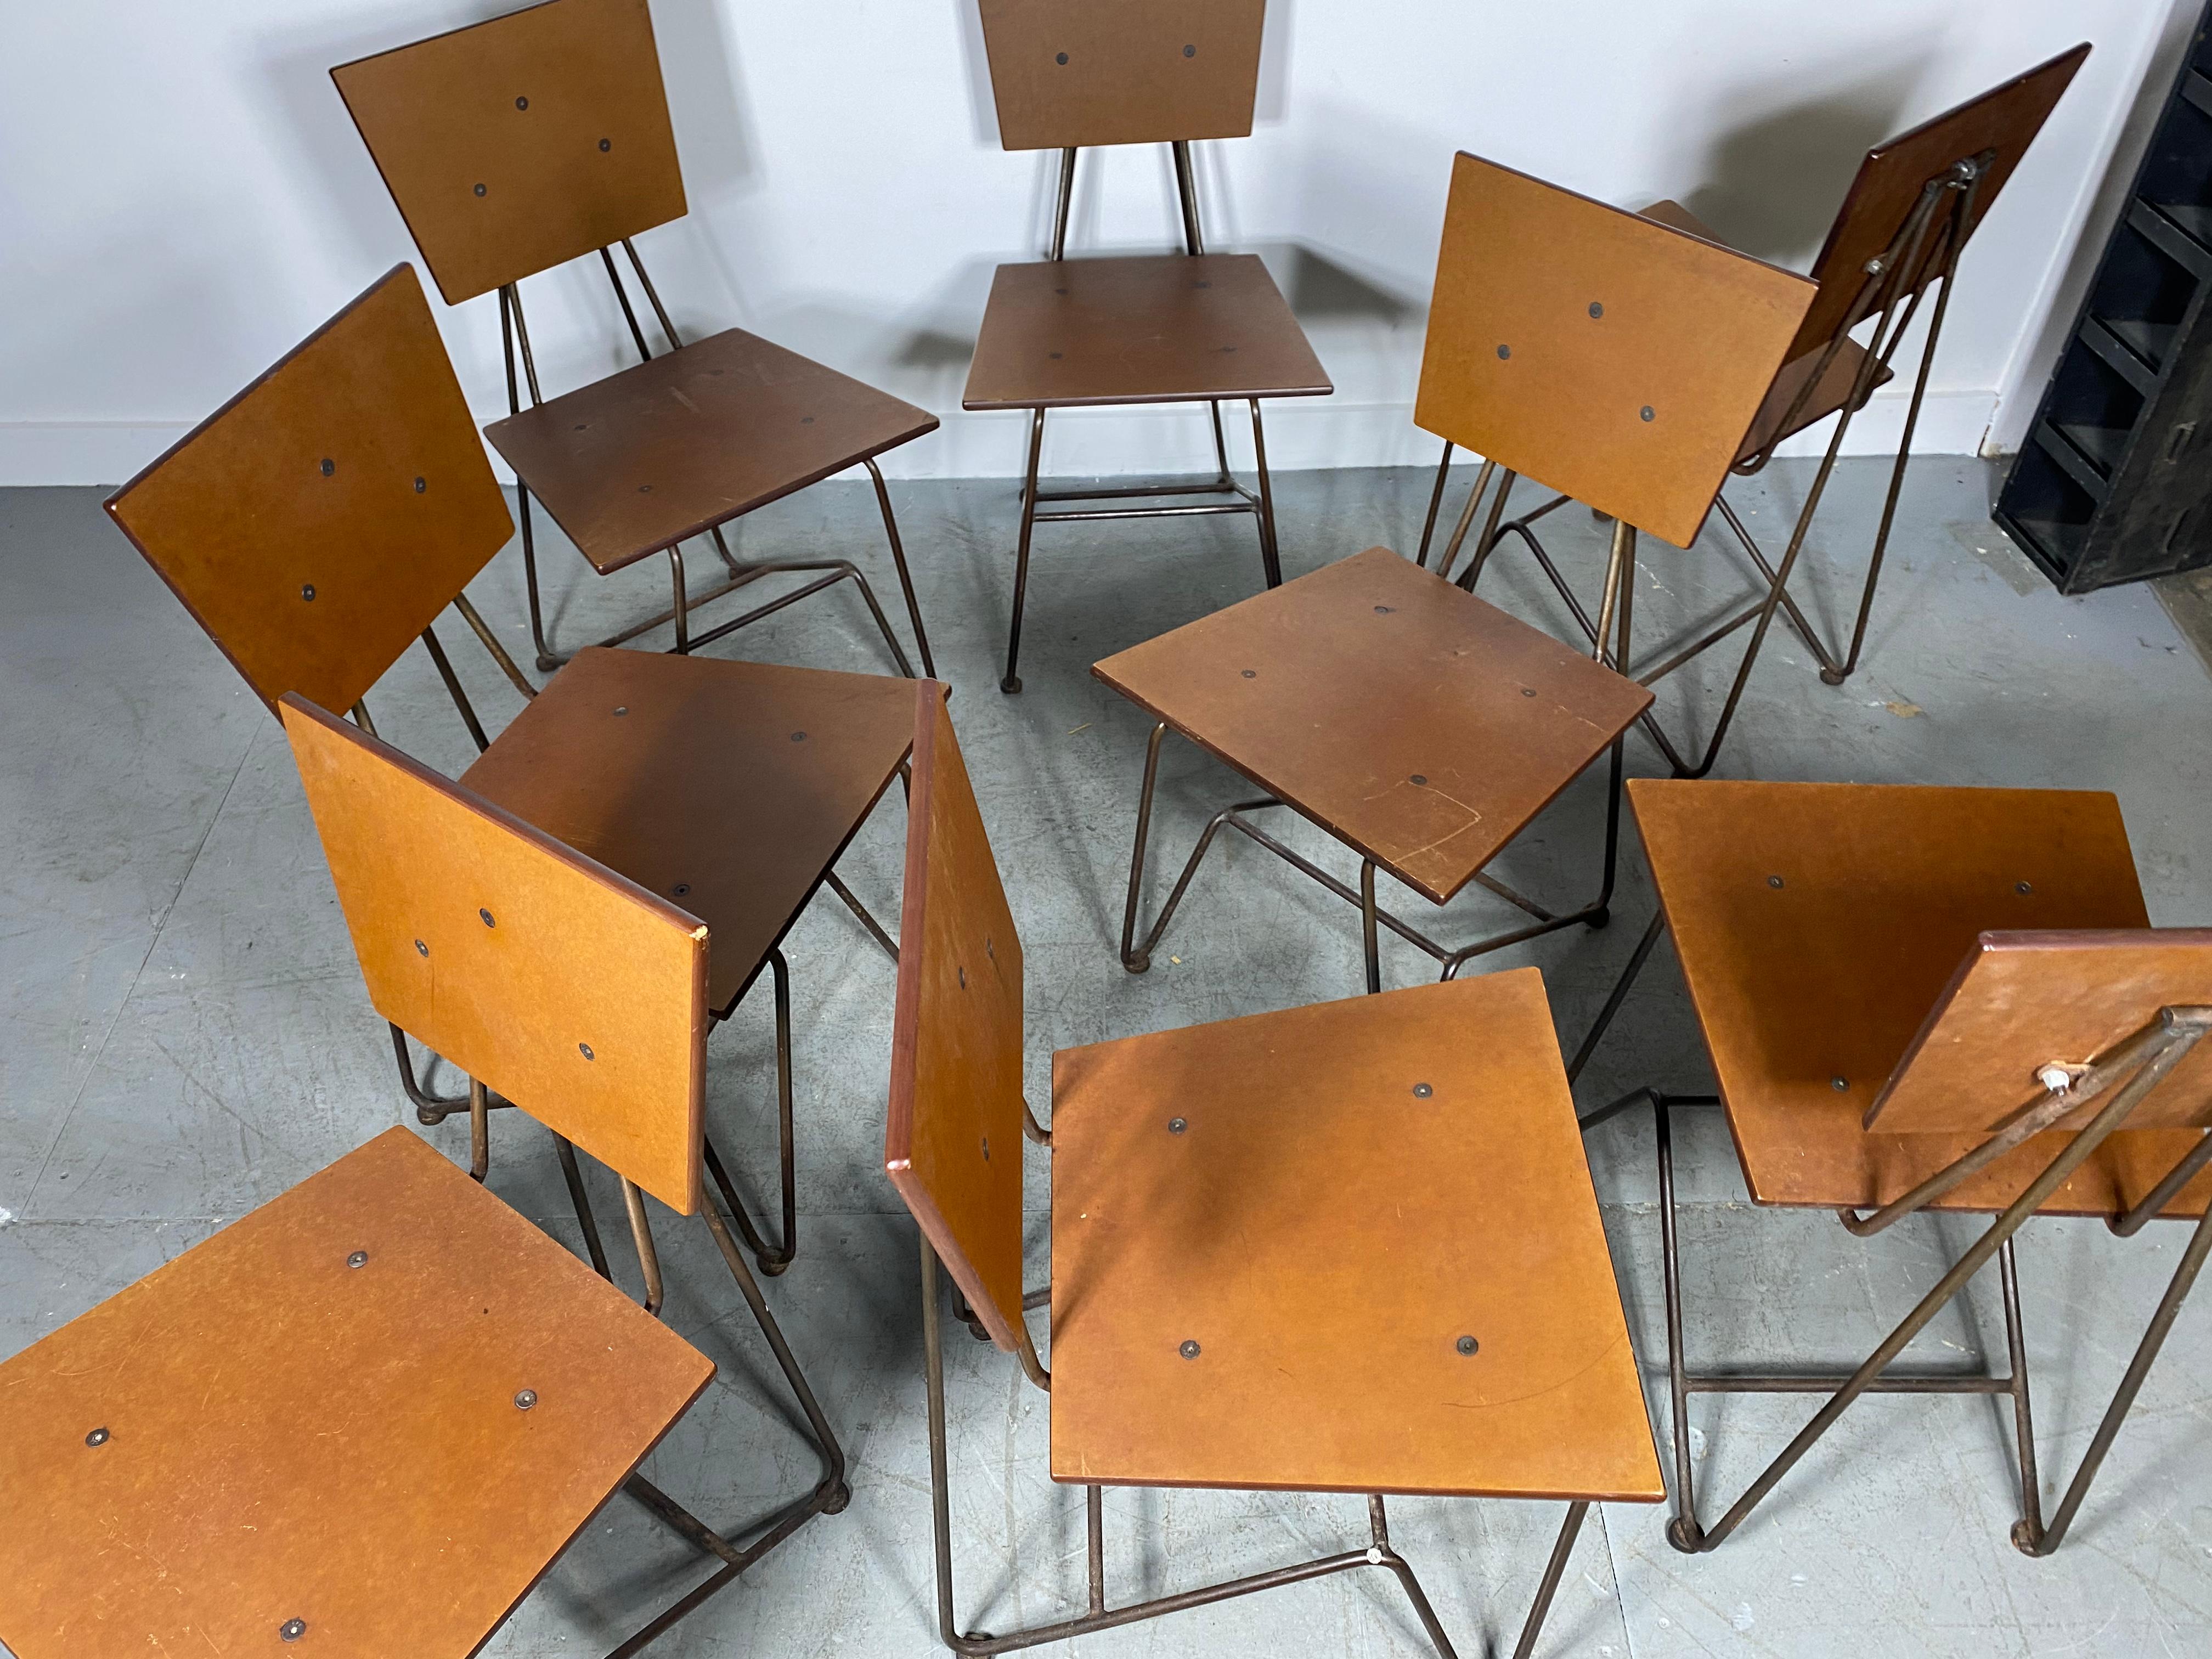 Ensemble de 8 chaises de salle à manger modernistes en fer et contreplaqué conçues par Steve Sauer

BRUCE GUESWEL CHAISE INDUSTRIELLE EN ZINC ET CONTREPLAQUÉ
Le design Contemporary a été réalisé par Steve Sauer en 1995 pour le groupe de restaurants